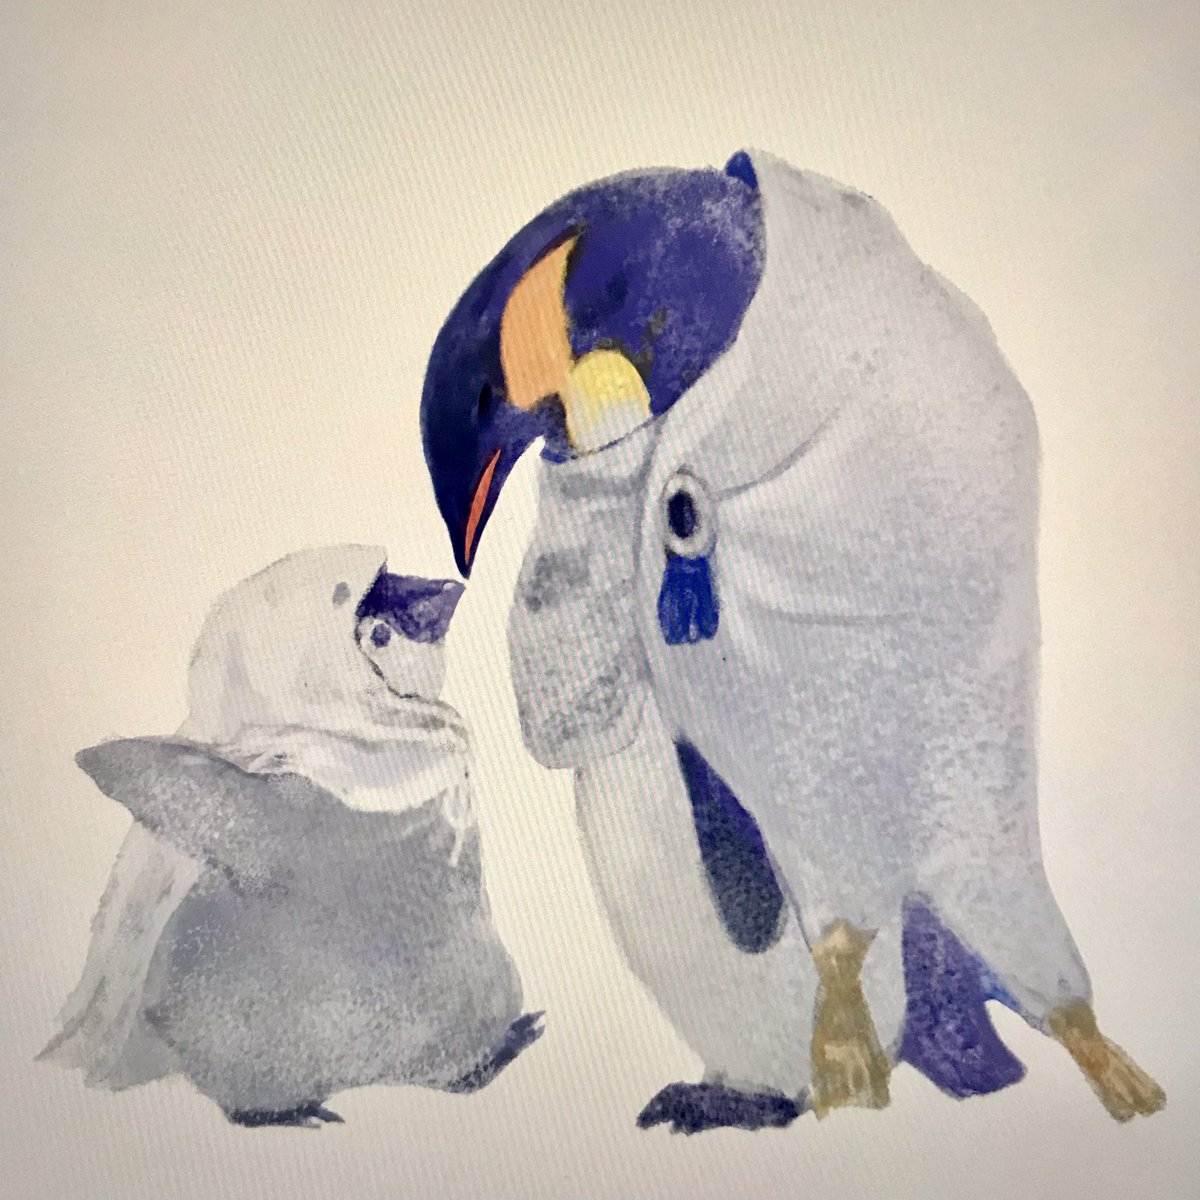 「ホンカペンギンとウツシの雛とウツシペンギンの群れ、描き込んでフワフワにして入稿し」|ふっきんのイラスト